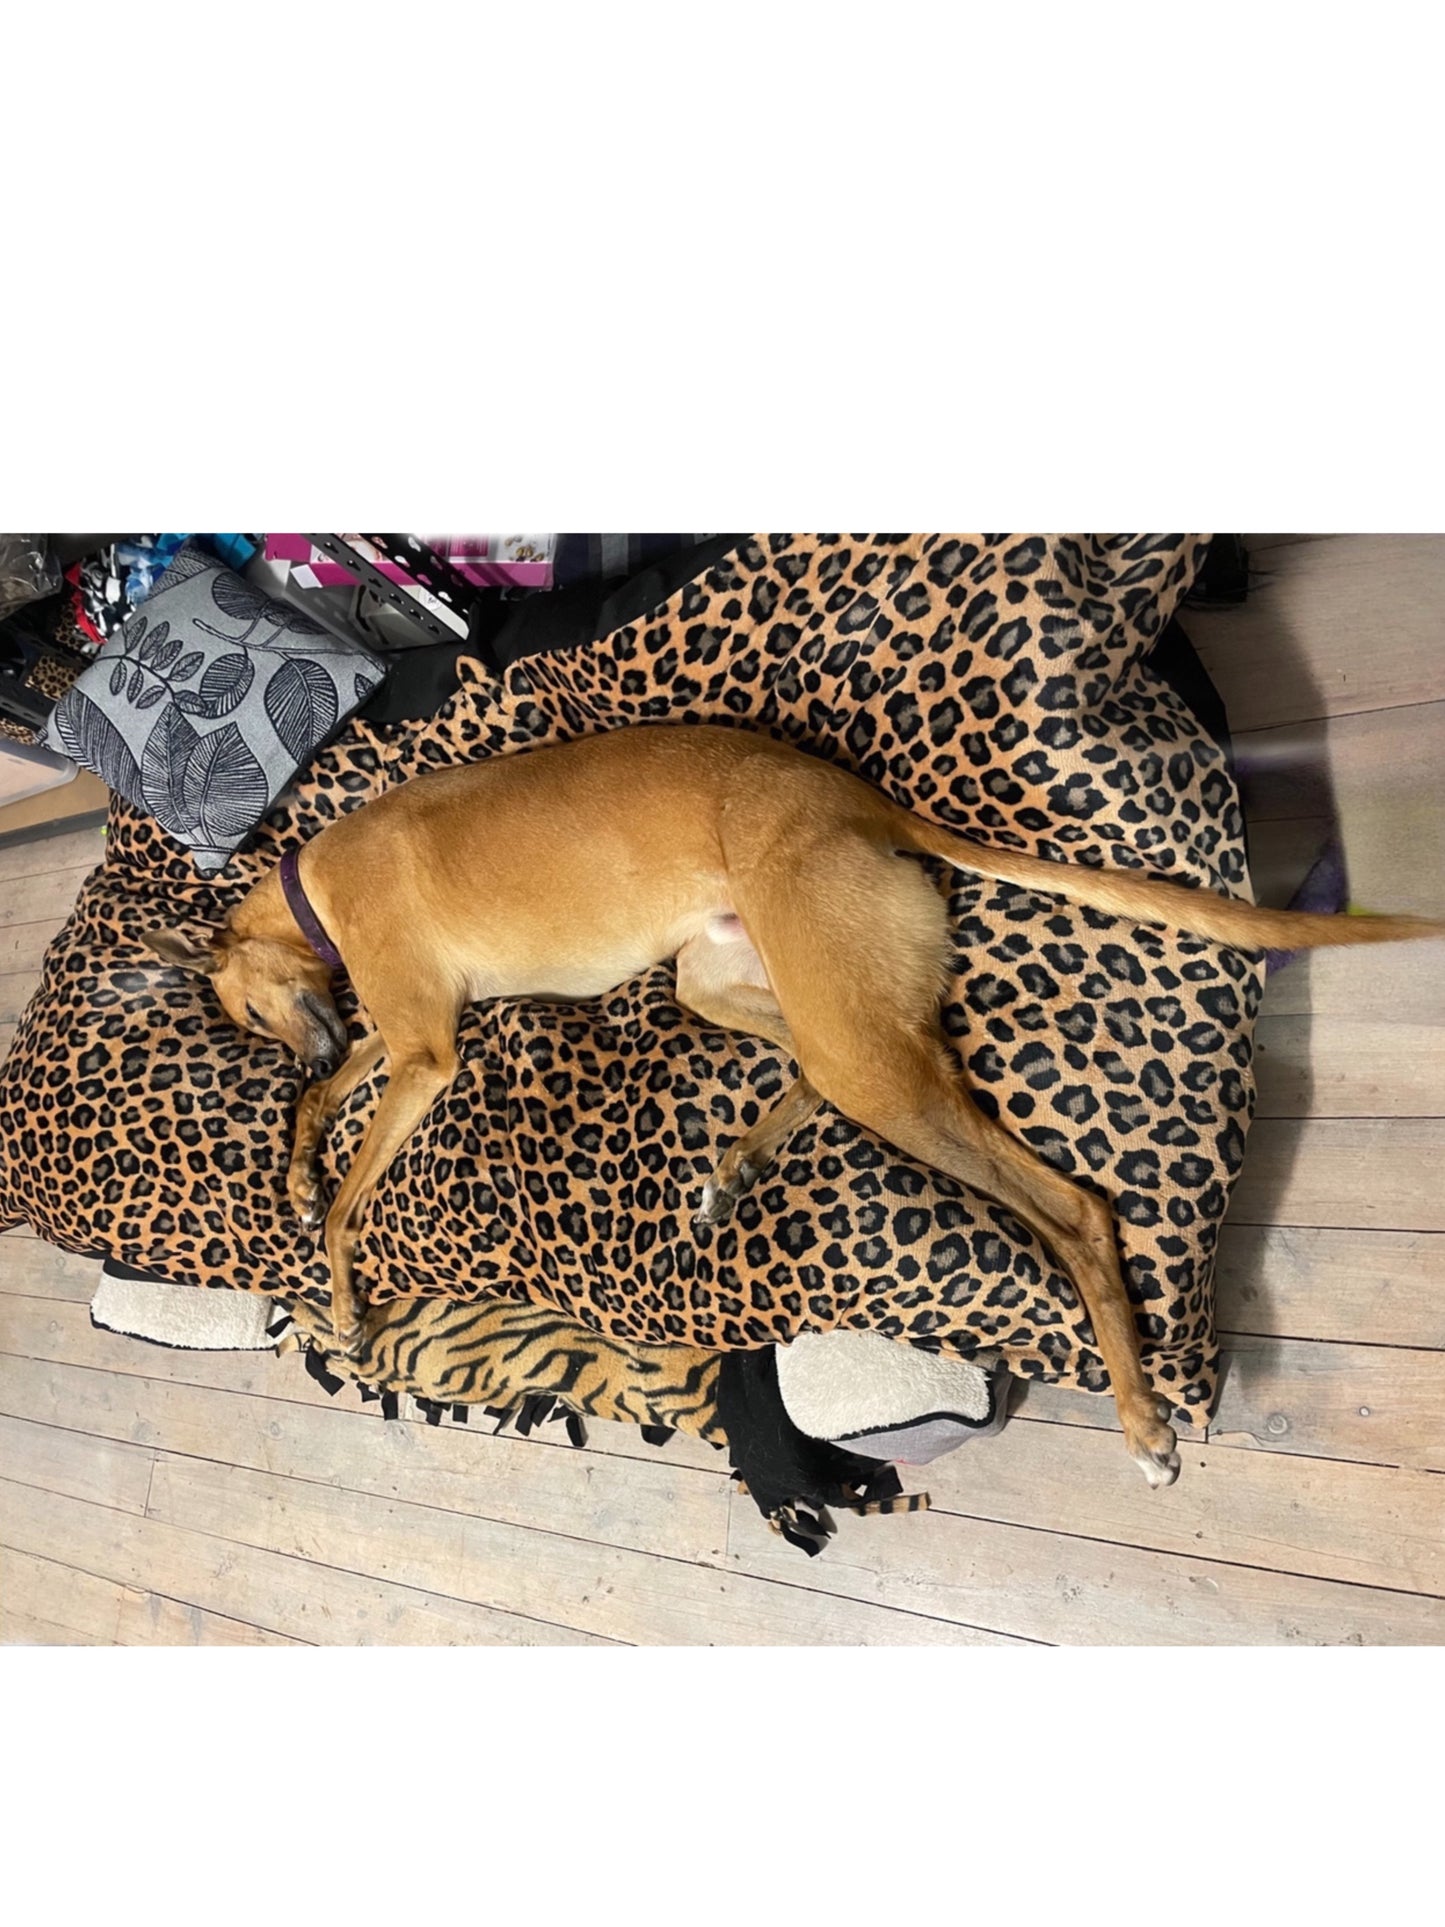 Jumbo super soft fleece cover DIY dog bed luxury washable